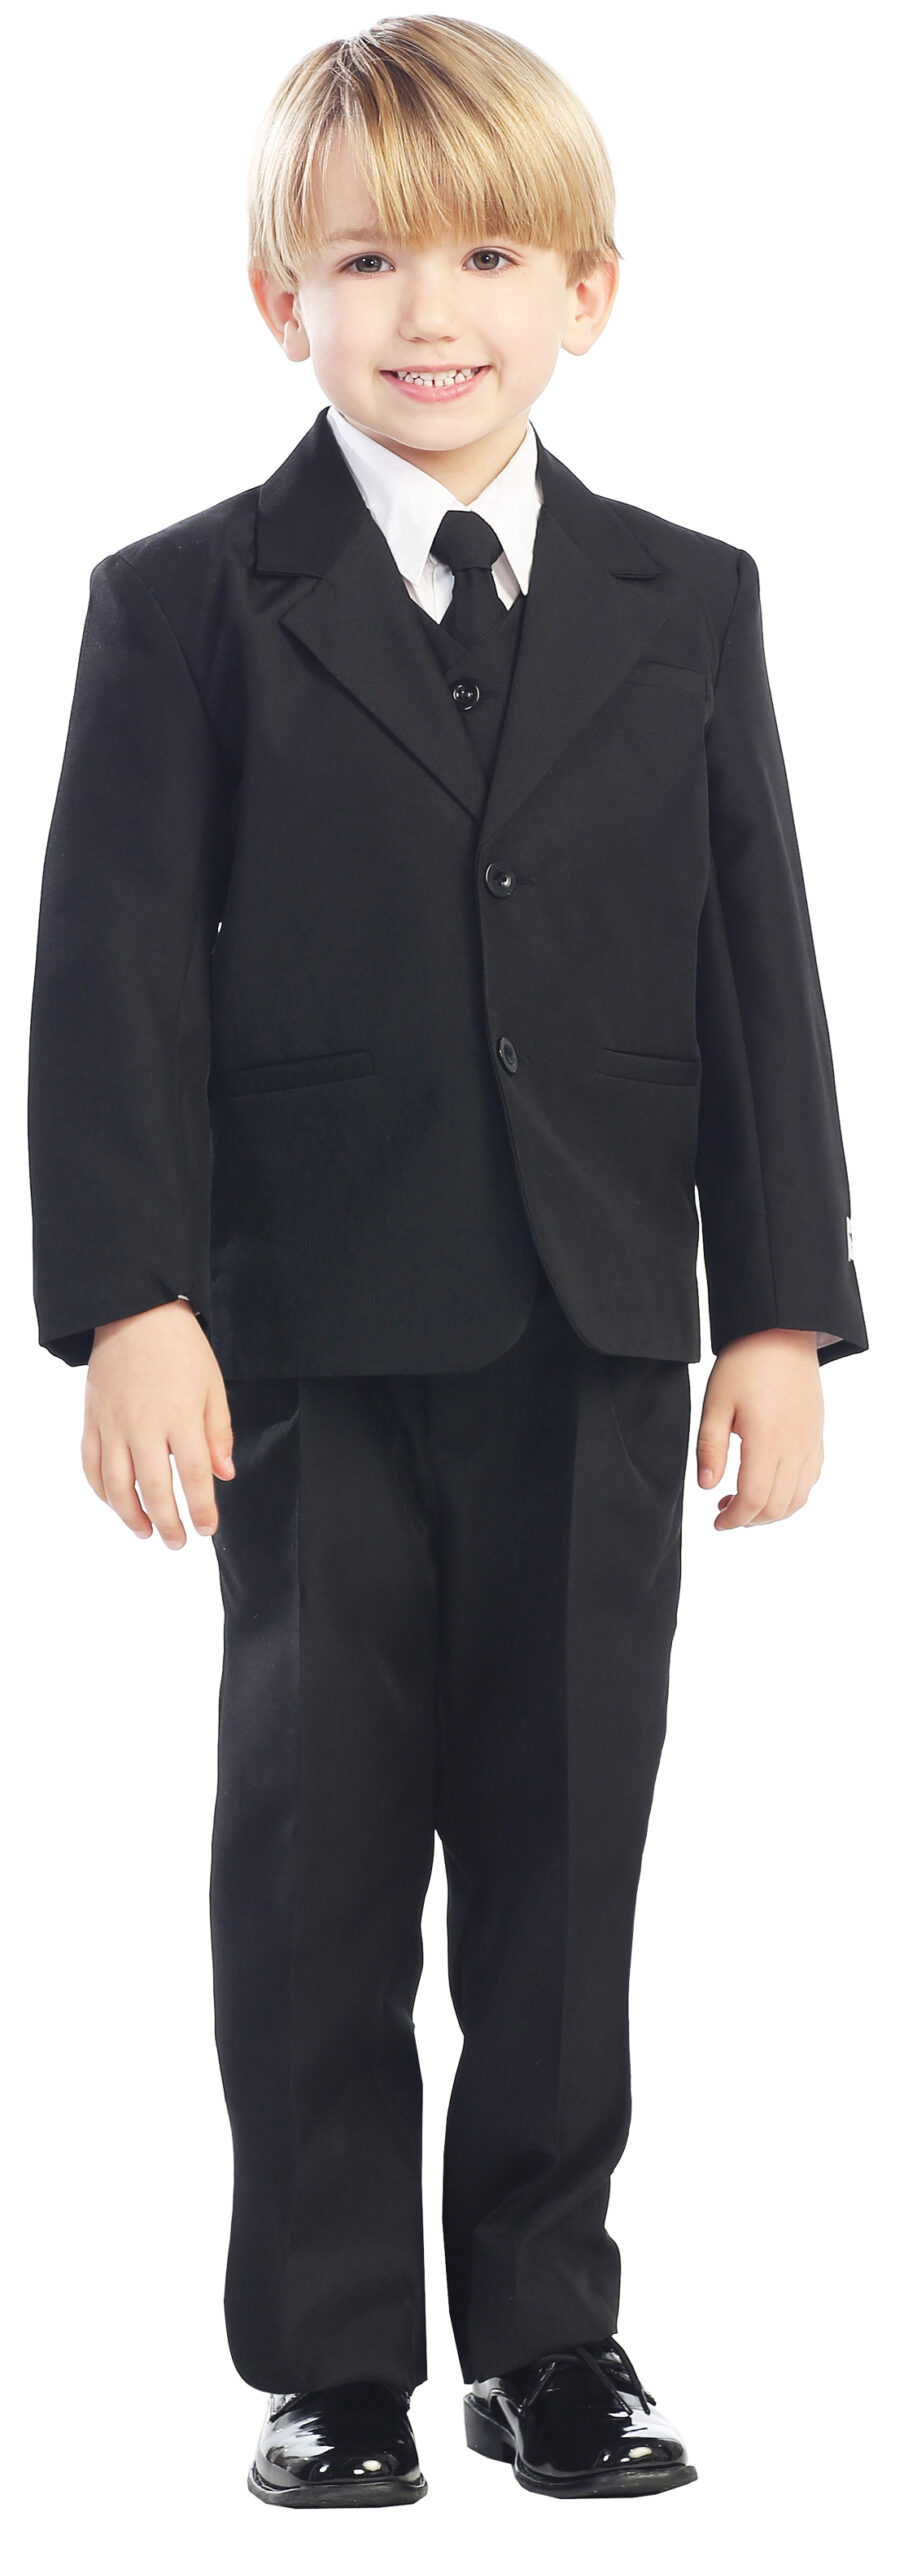 Avery Hill 5-Piece Boy's 2-Button Dress Suit Full-Back Vest - Black Size 16